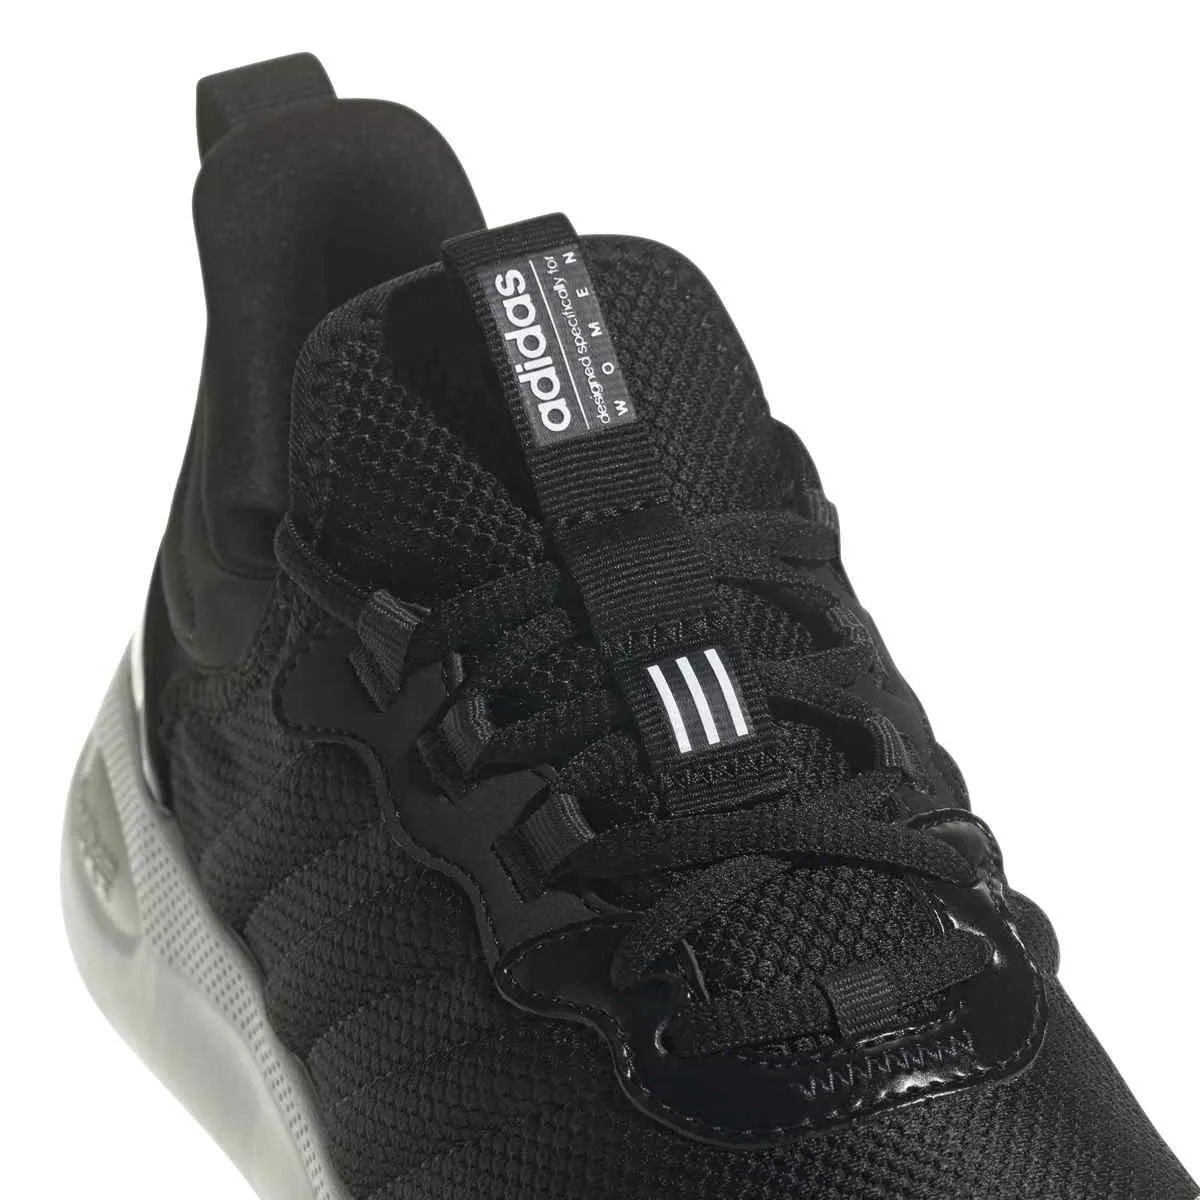 adidas Sportschuhe Purecomfort schwarz/weiß